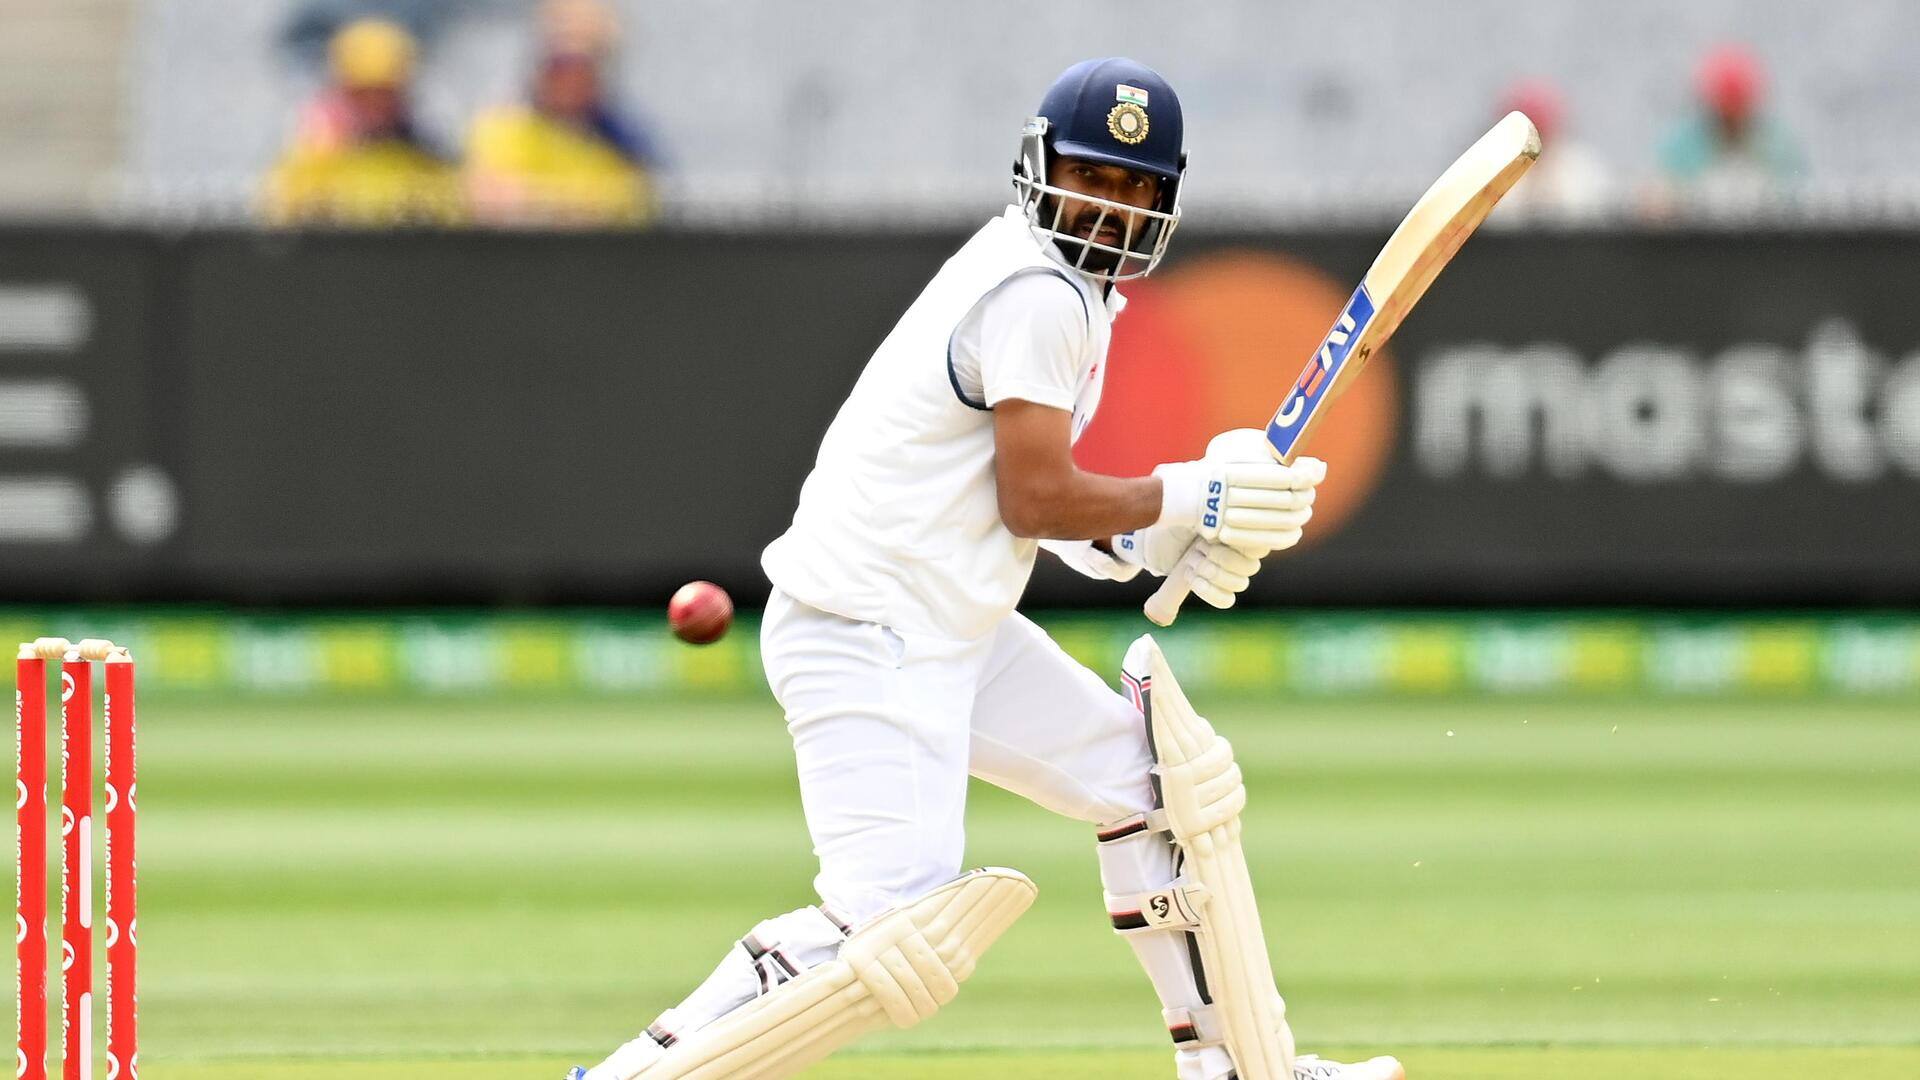 अजिंक्य रहाणे ने वेस्टइंडीज में बनाए हैं 102.80 की औसत से टेस्ट रन, जानिए आंकड़े 